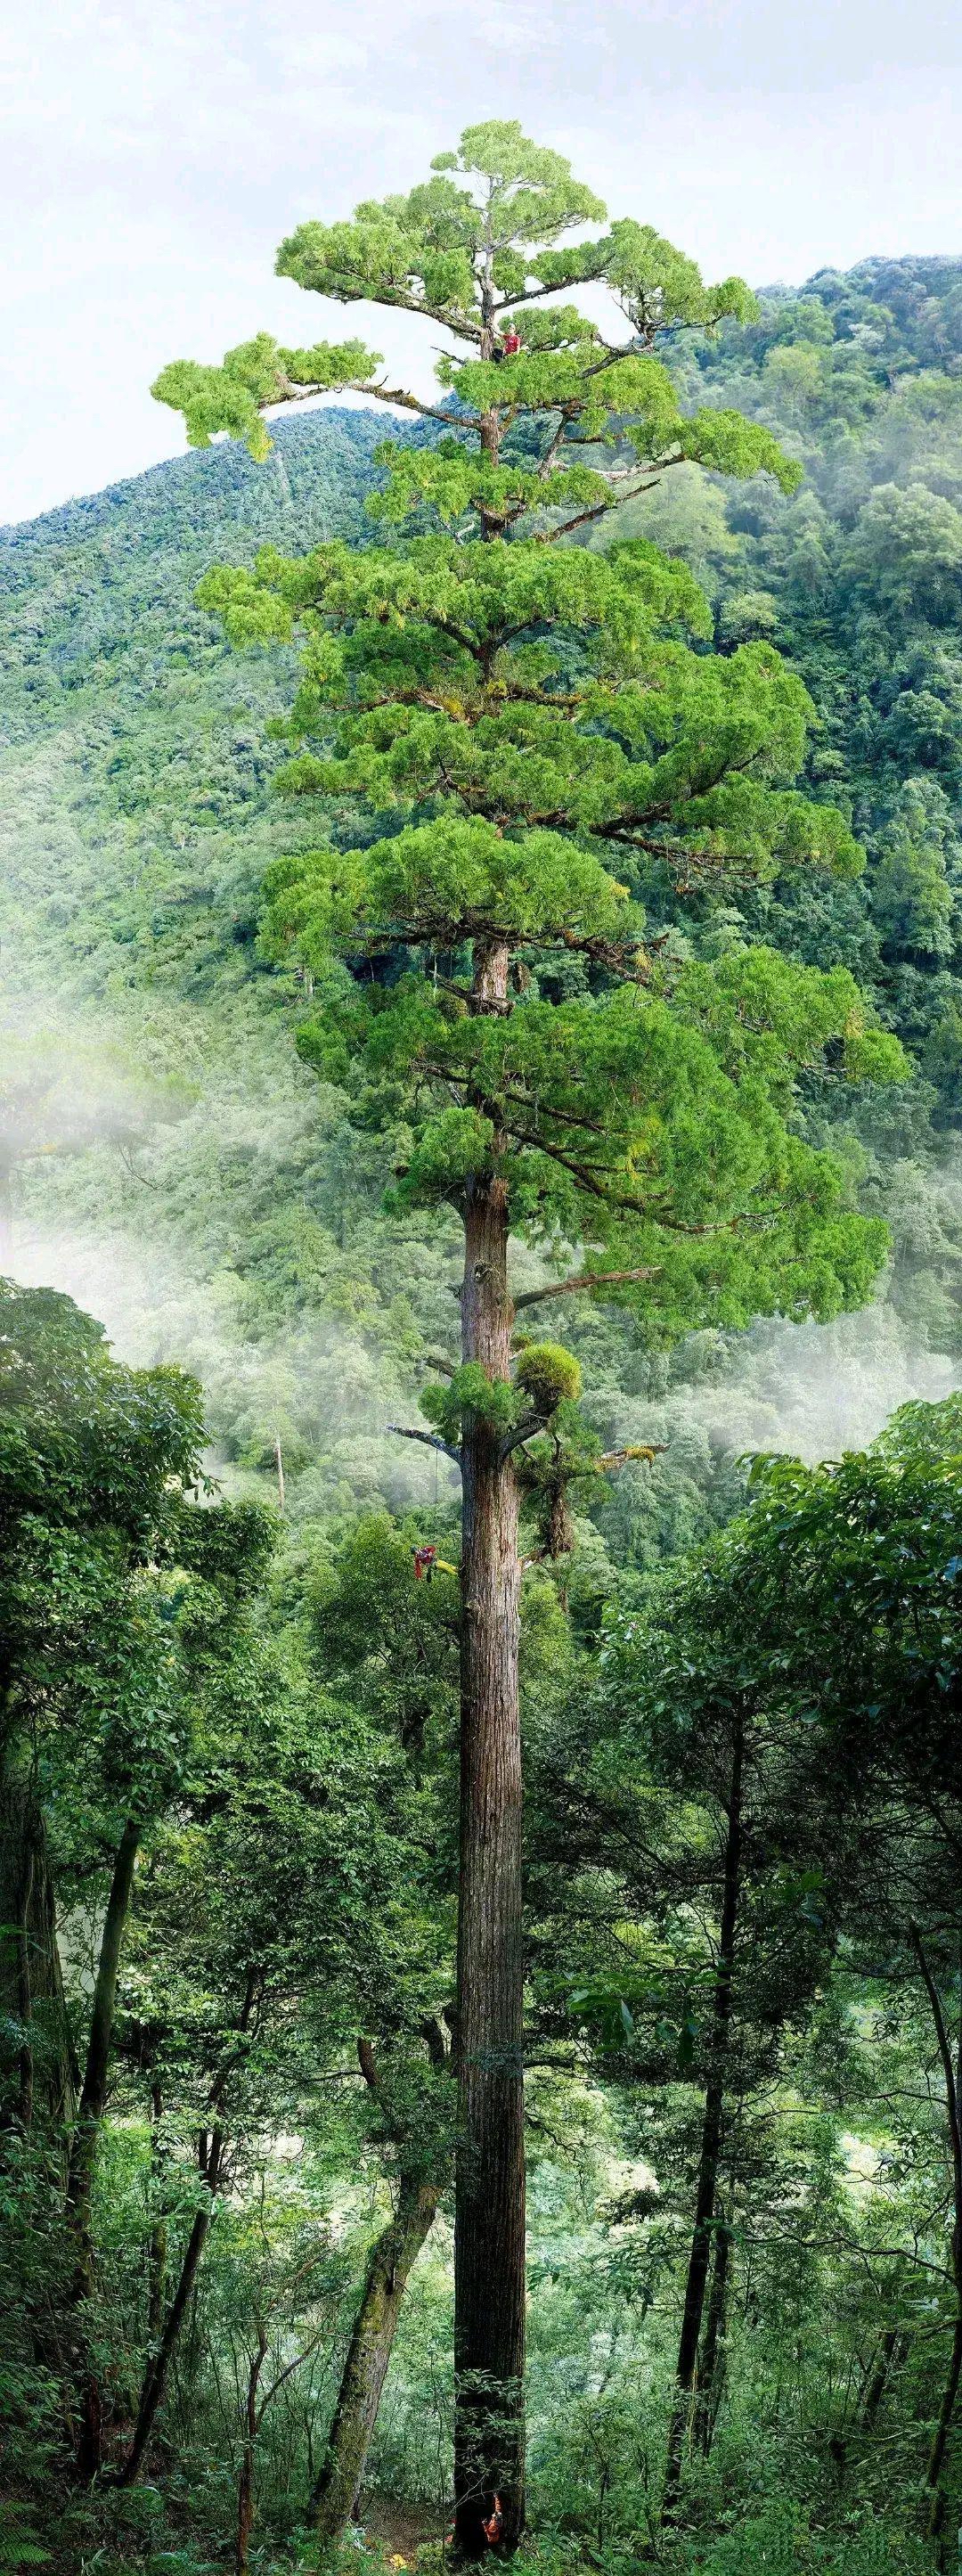 西藏发现最高的树,中国768米新树王,世界上最高的树多少米?